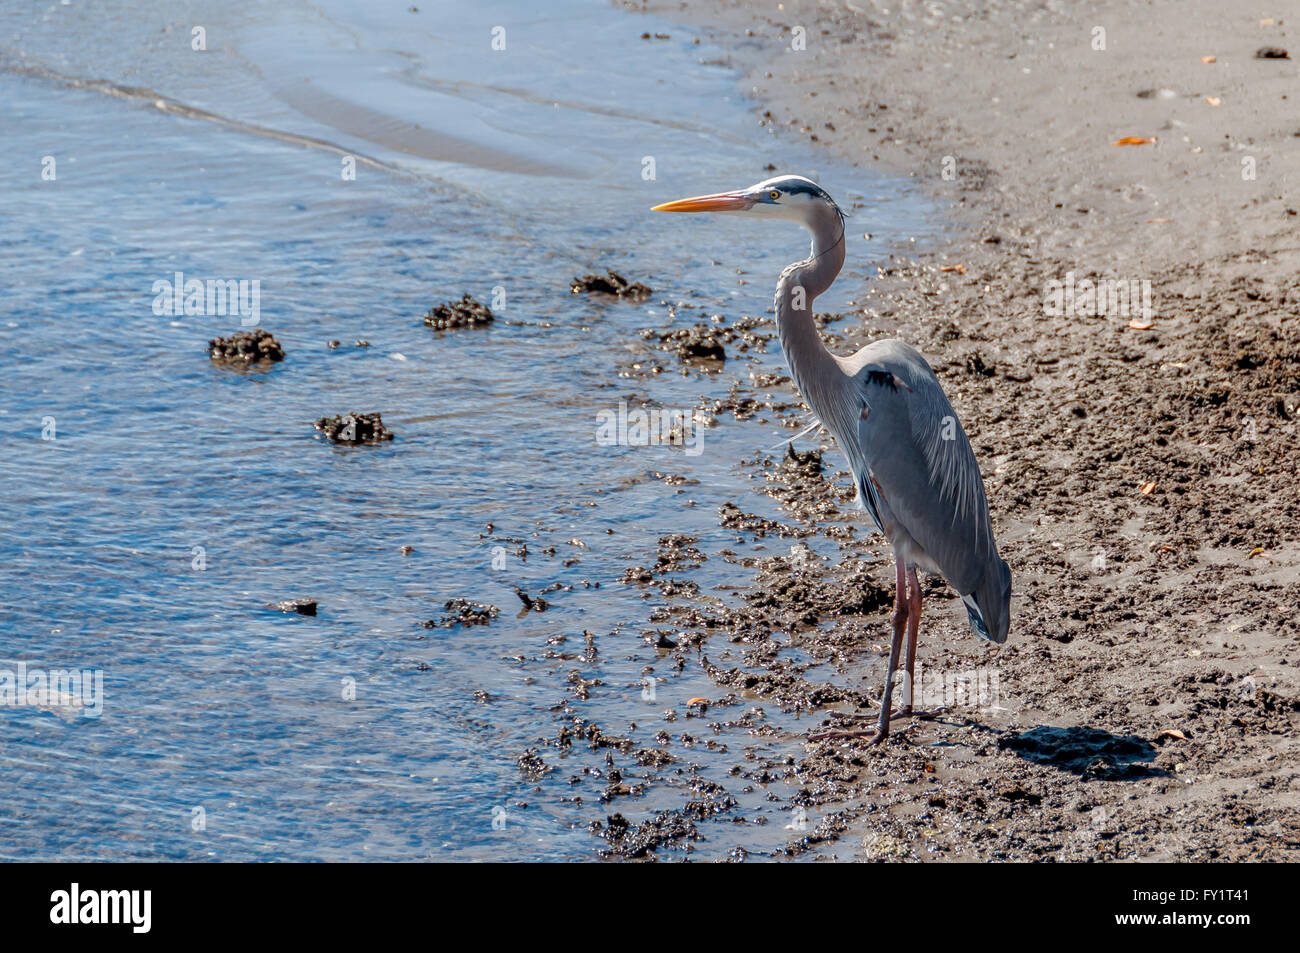 Great Blue Heron Vogel steht auf Sand Strand am Wasserrand, Sea of Cortez und die Bucht von La Paz, Baja, Mexiko, Horizontal / Querformat. Stockfoto